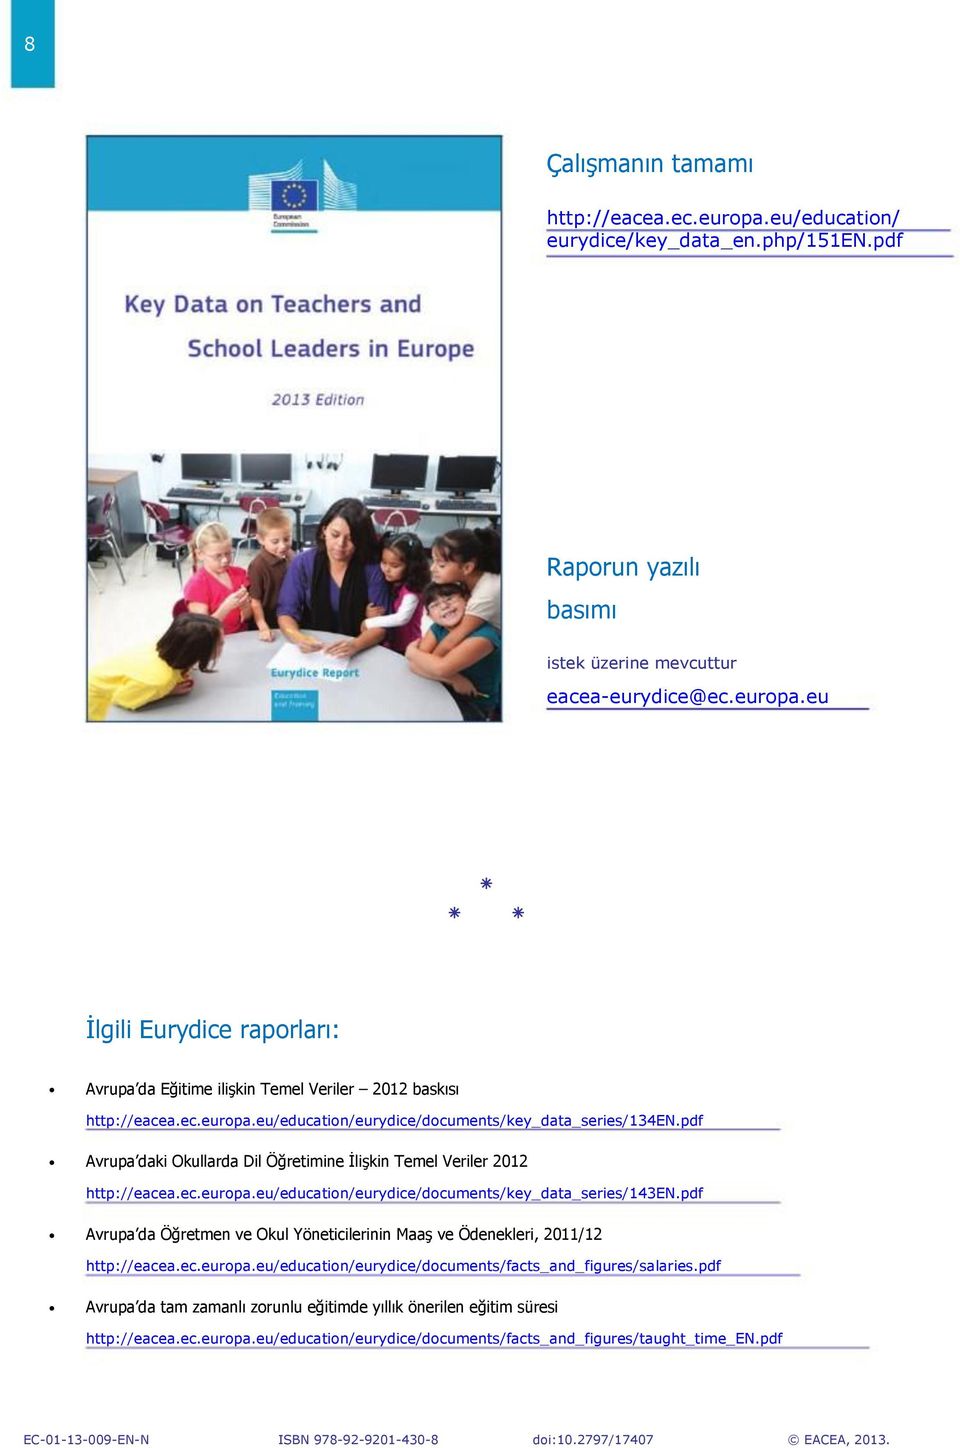 pdf Avrupa da Öğretmen ve Okul Yöneticilerinin Maaş ve Ödenekleri, 2011/12 http://eacea.ec.europa.eu/education/eurydice/documents/facts_and_figures/salaries.